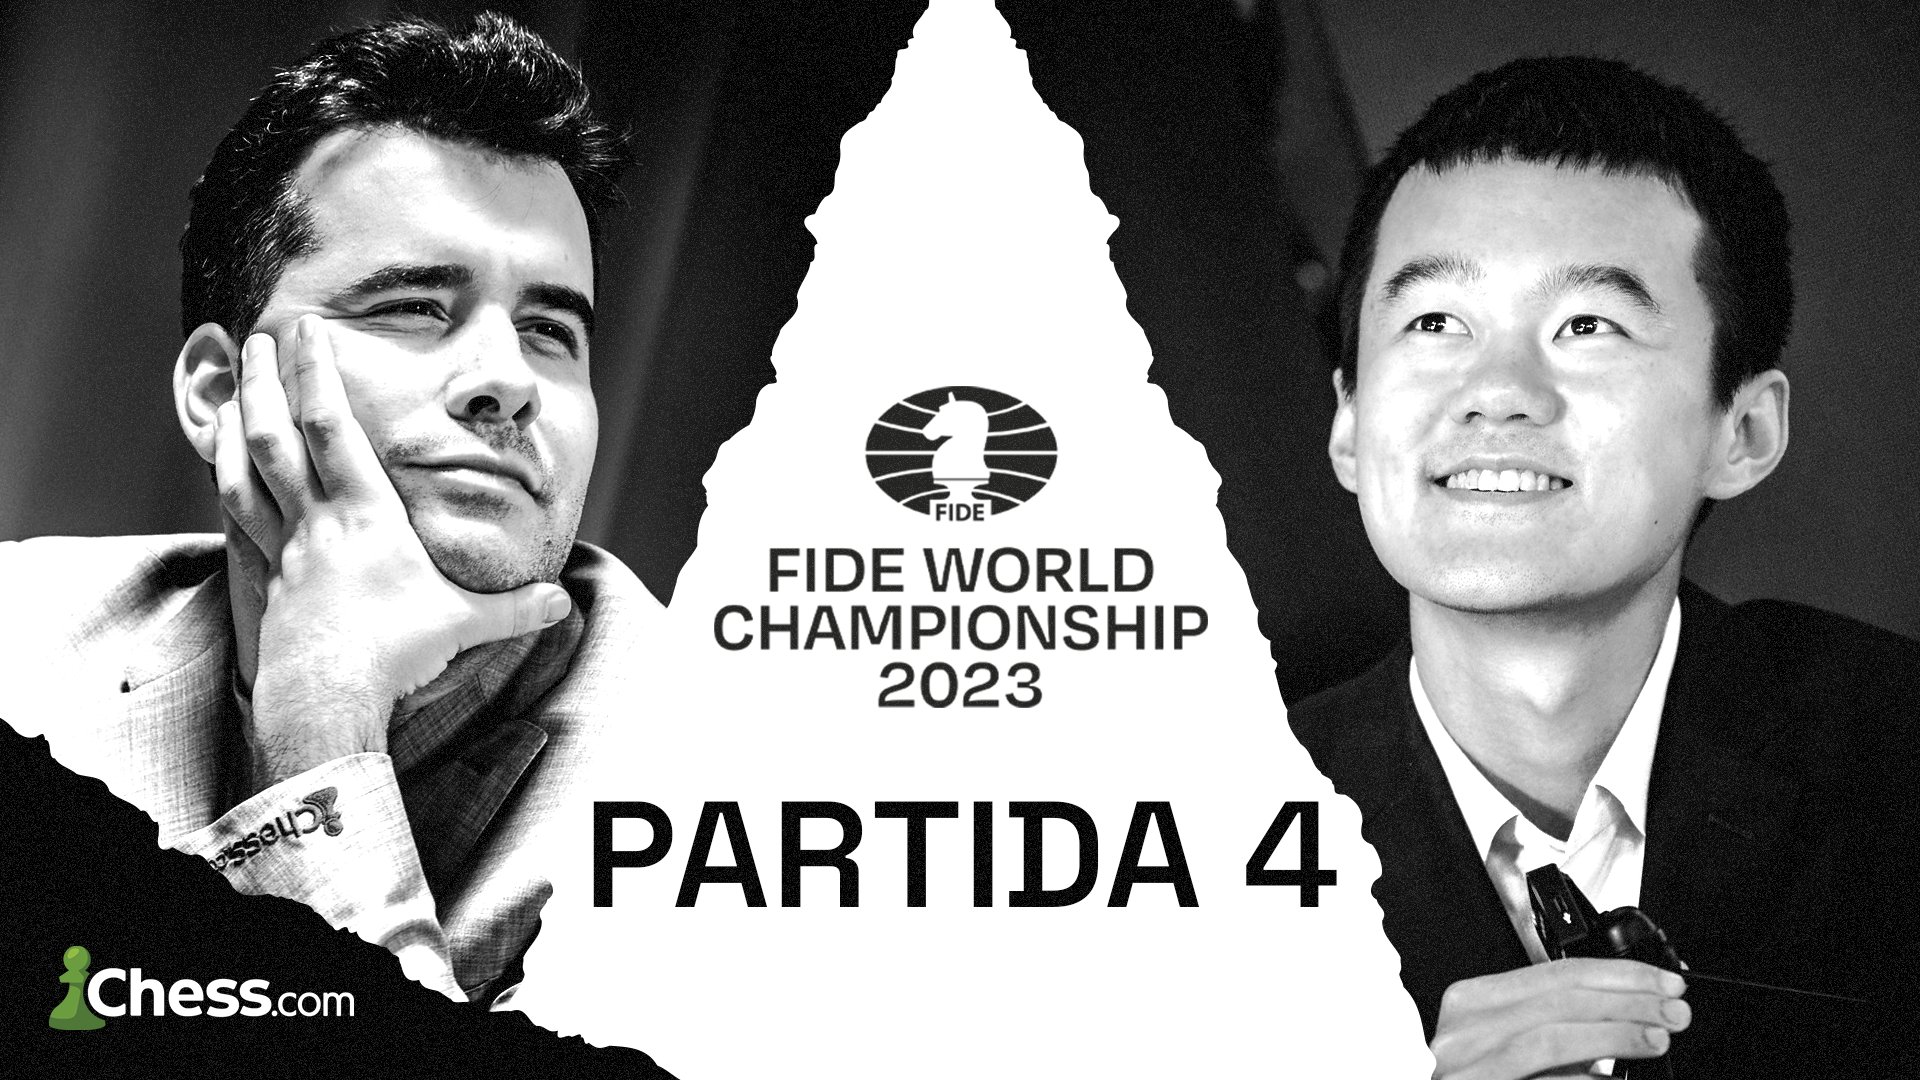 Chess.com Português on X: 🏆 Campeonato Mundial da FIDE 2023 / Partida 04  🎙️ Comentários: GM Krikor MEKHITARIAN & WIM Florencia FERNÁNDEZ 🎯 13 de  abril às 06:00 BSB / 10:00 LIS